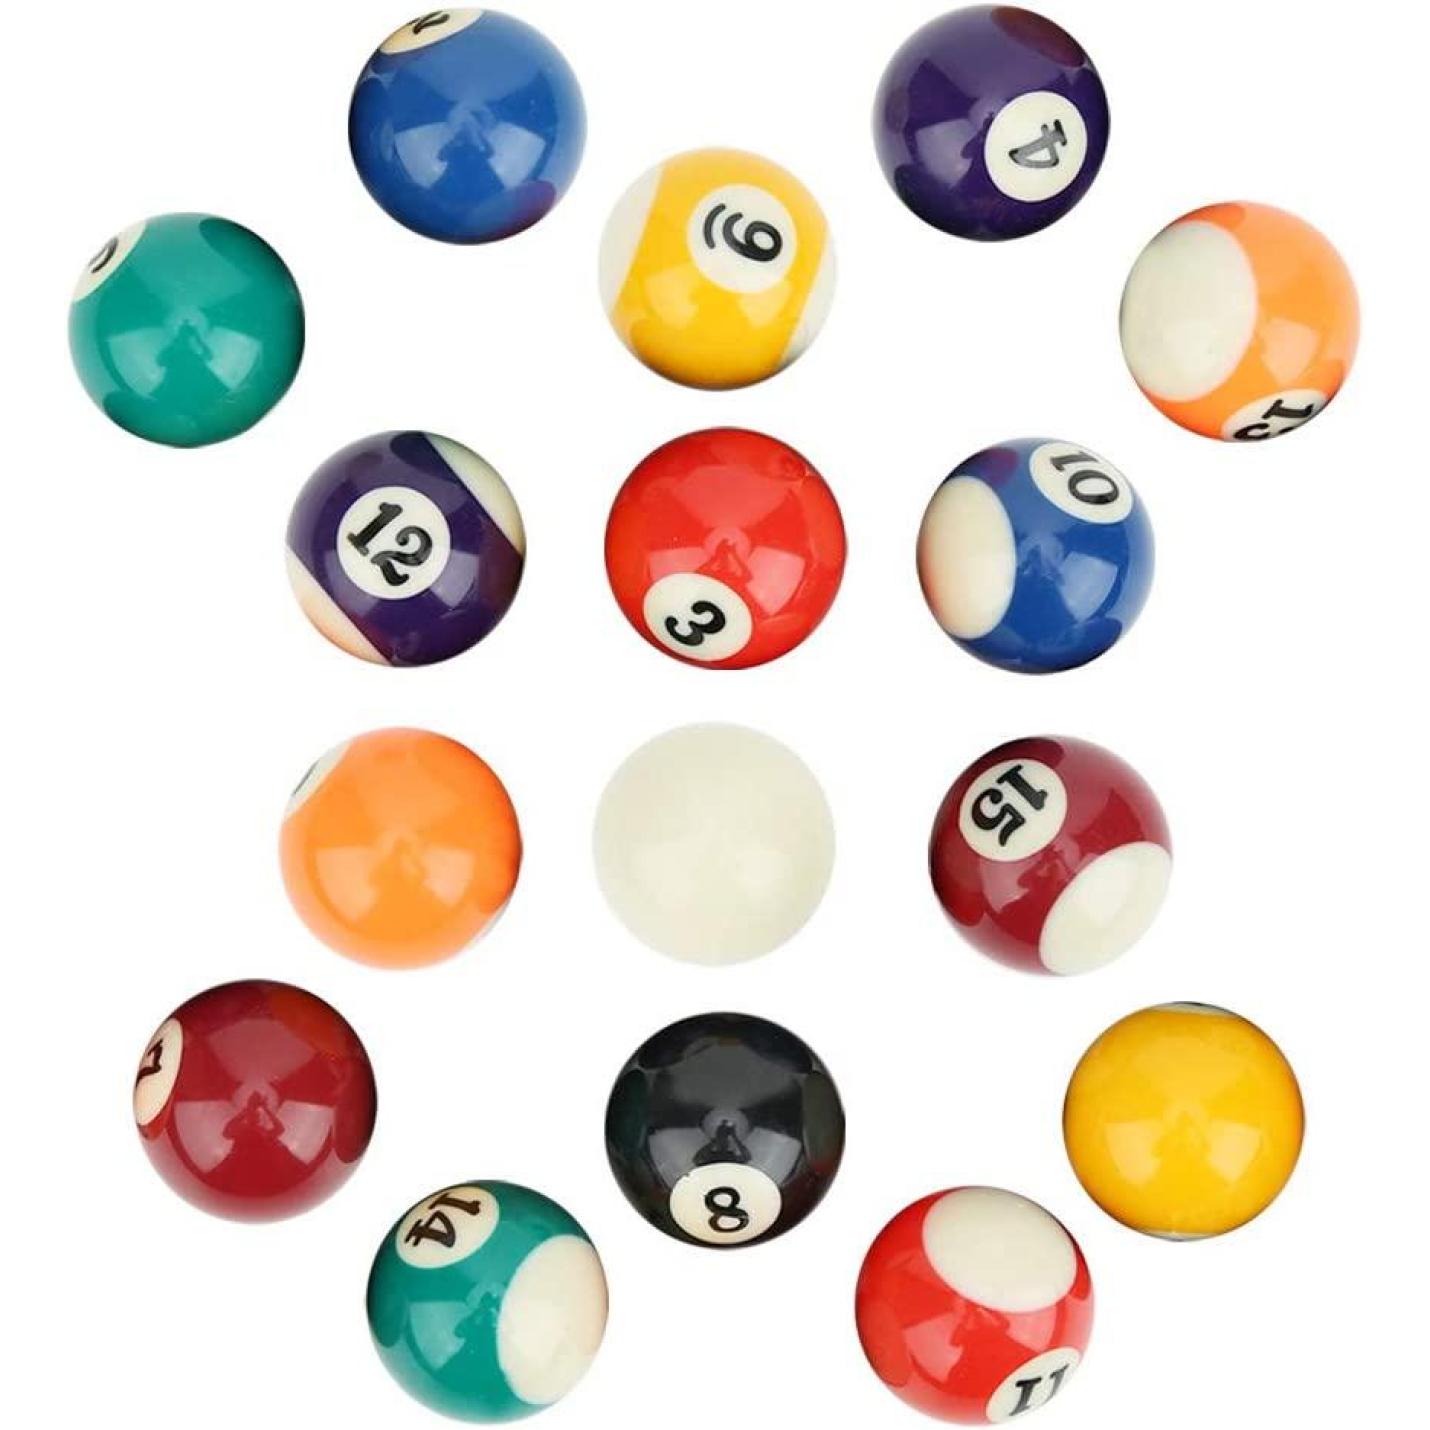 16 stuks milieuvriendelijke mini-biljartballen - perfect voor kinderen en beginners